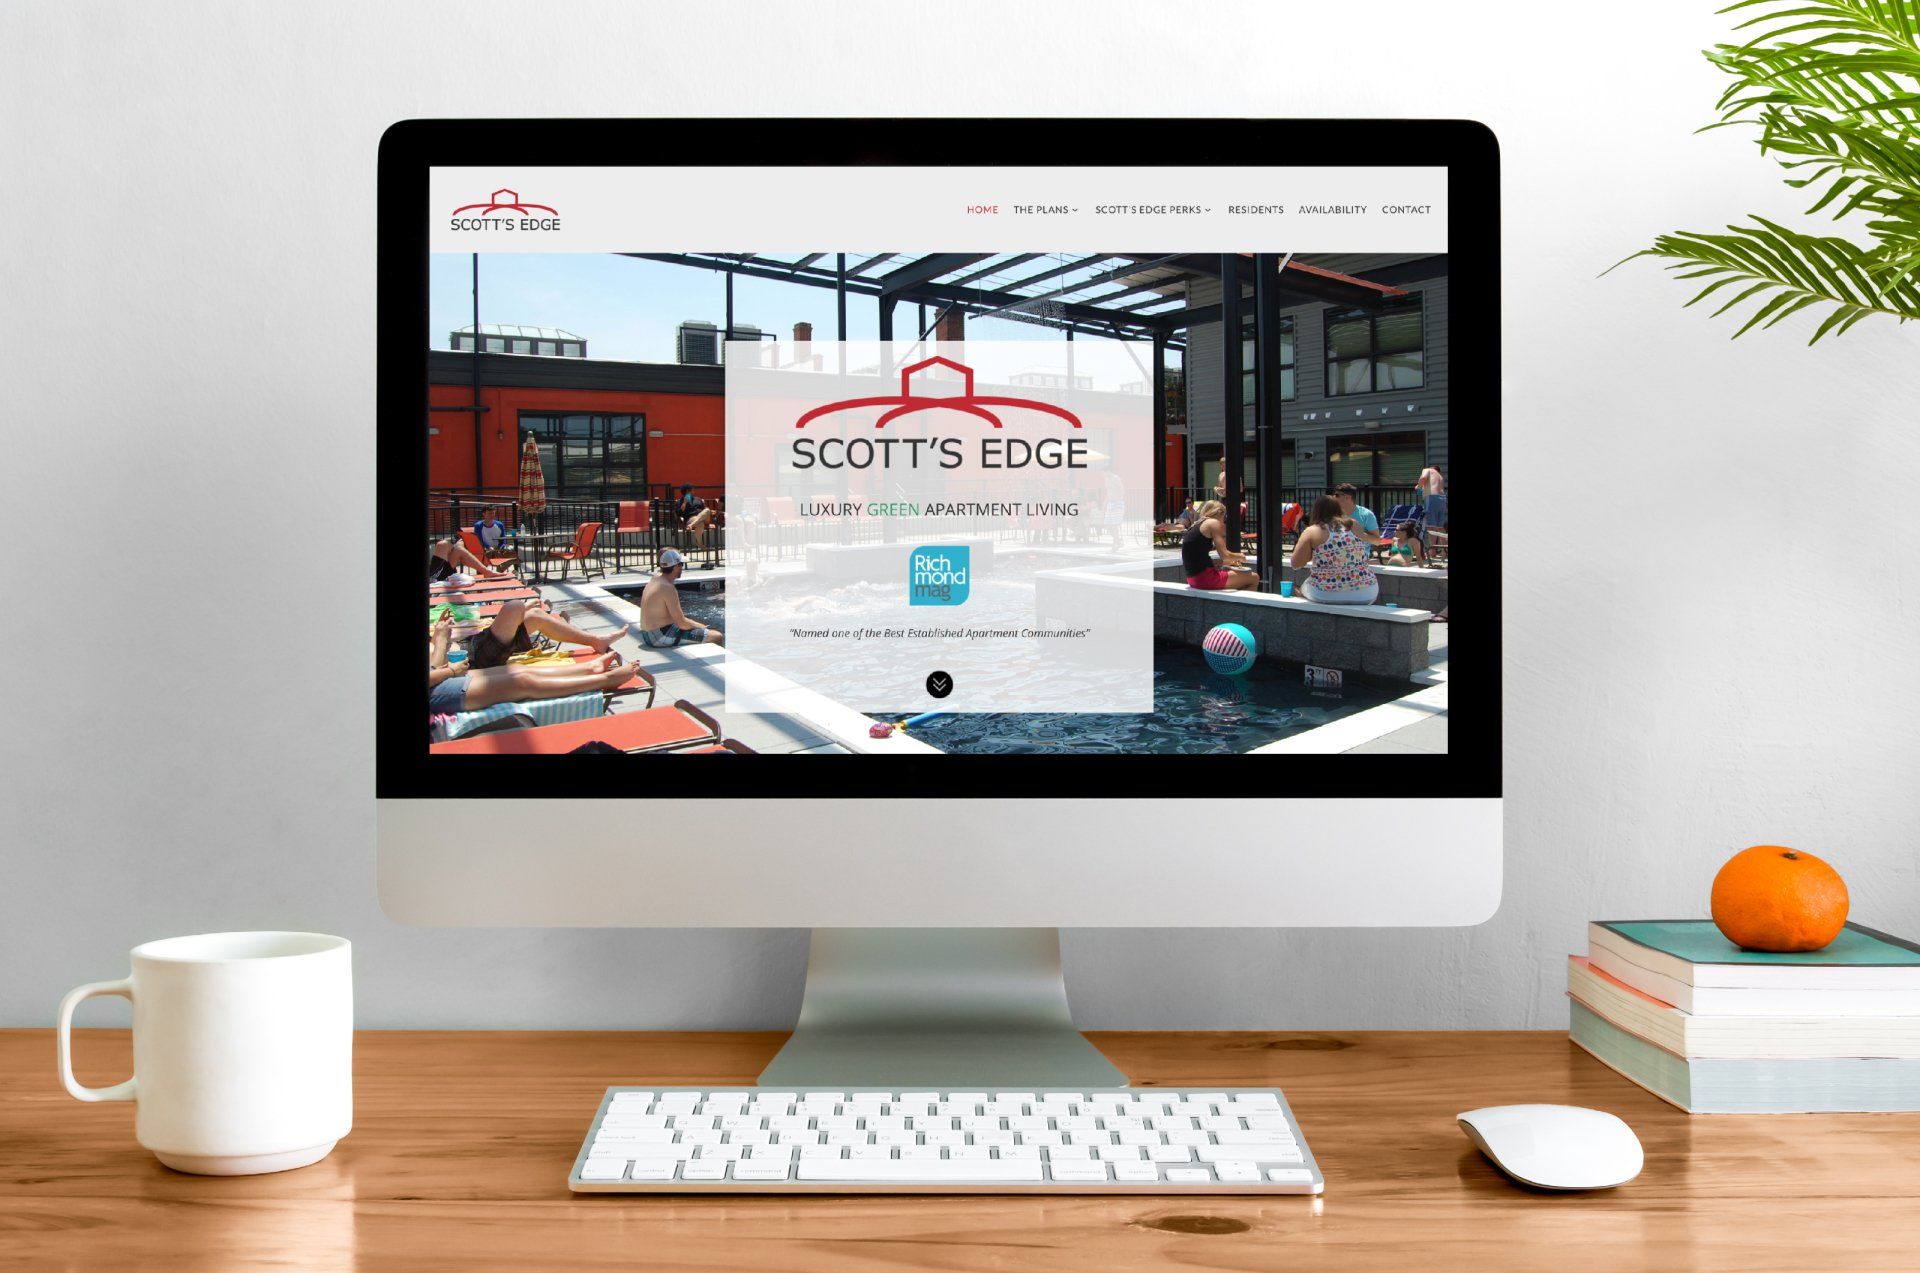 Scott's Edge apartments website design